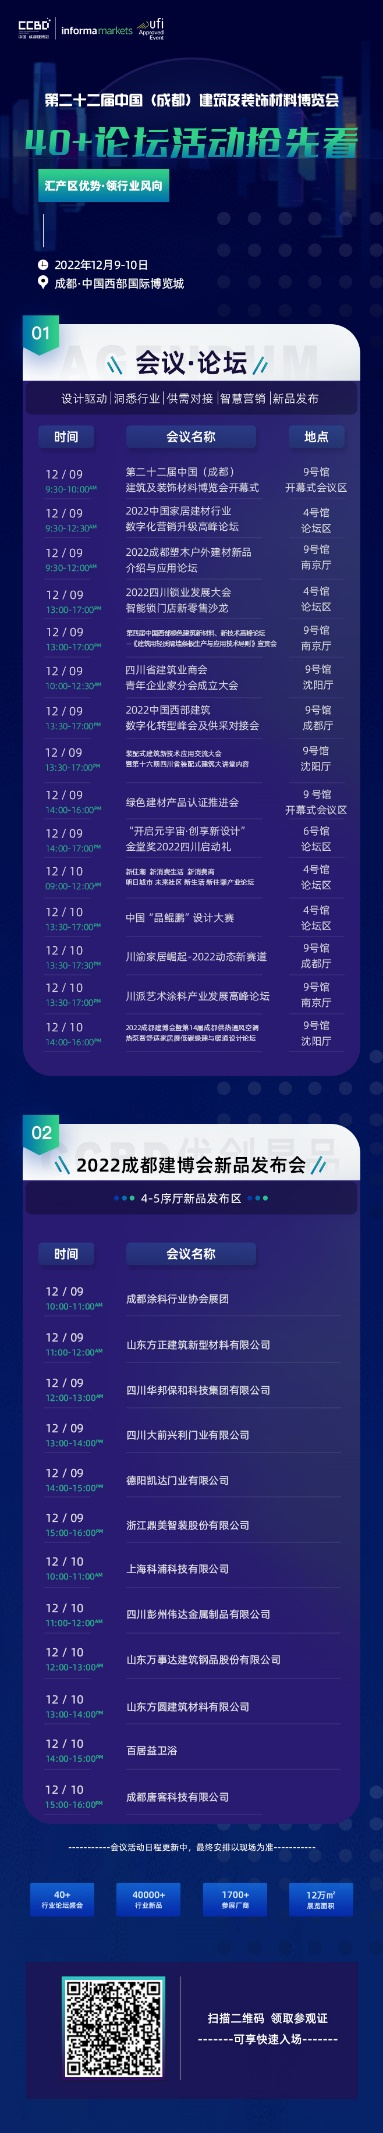 倒计时30天  2022中国成都建博会有“您”更精彩